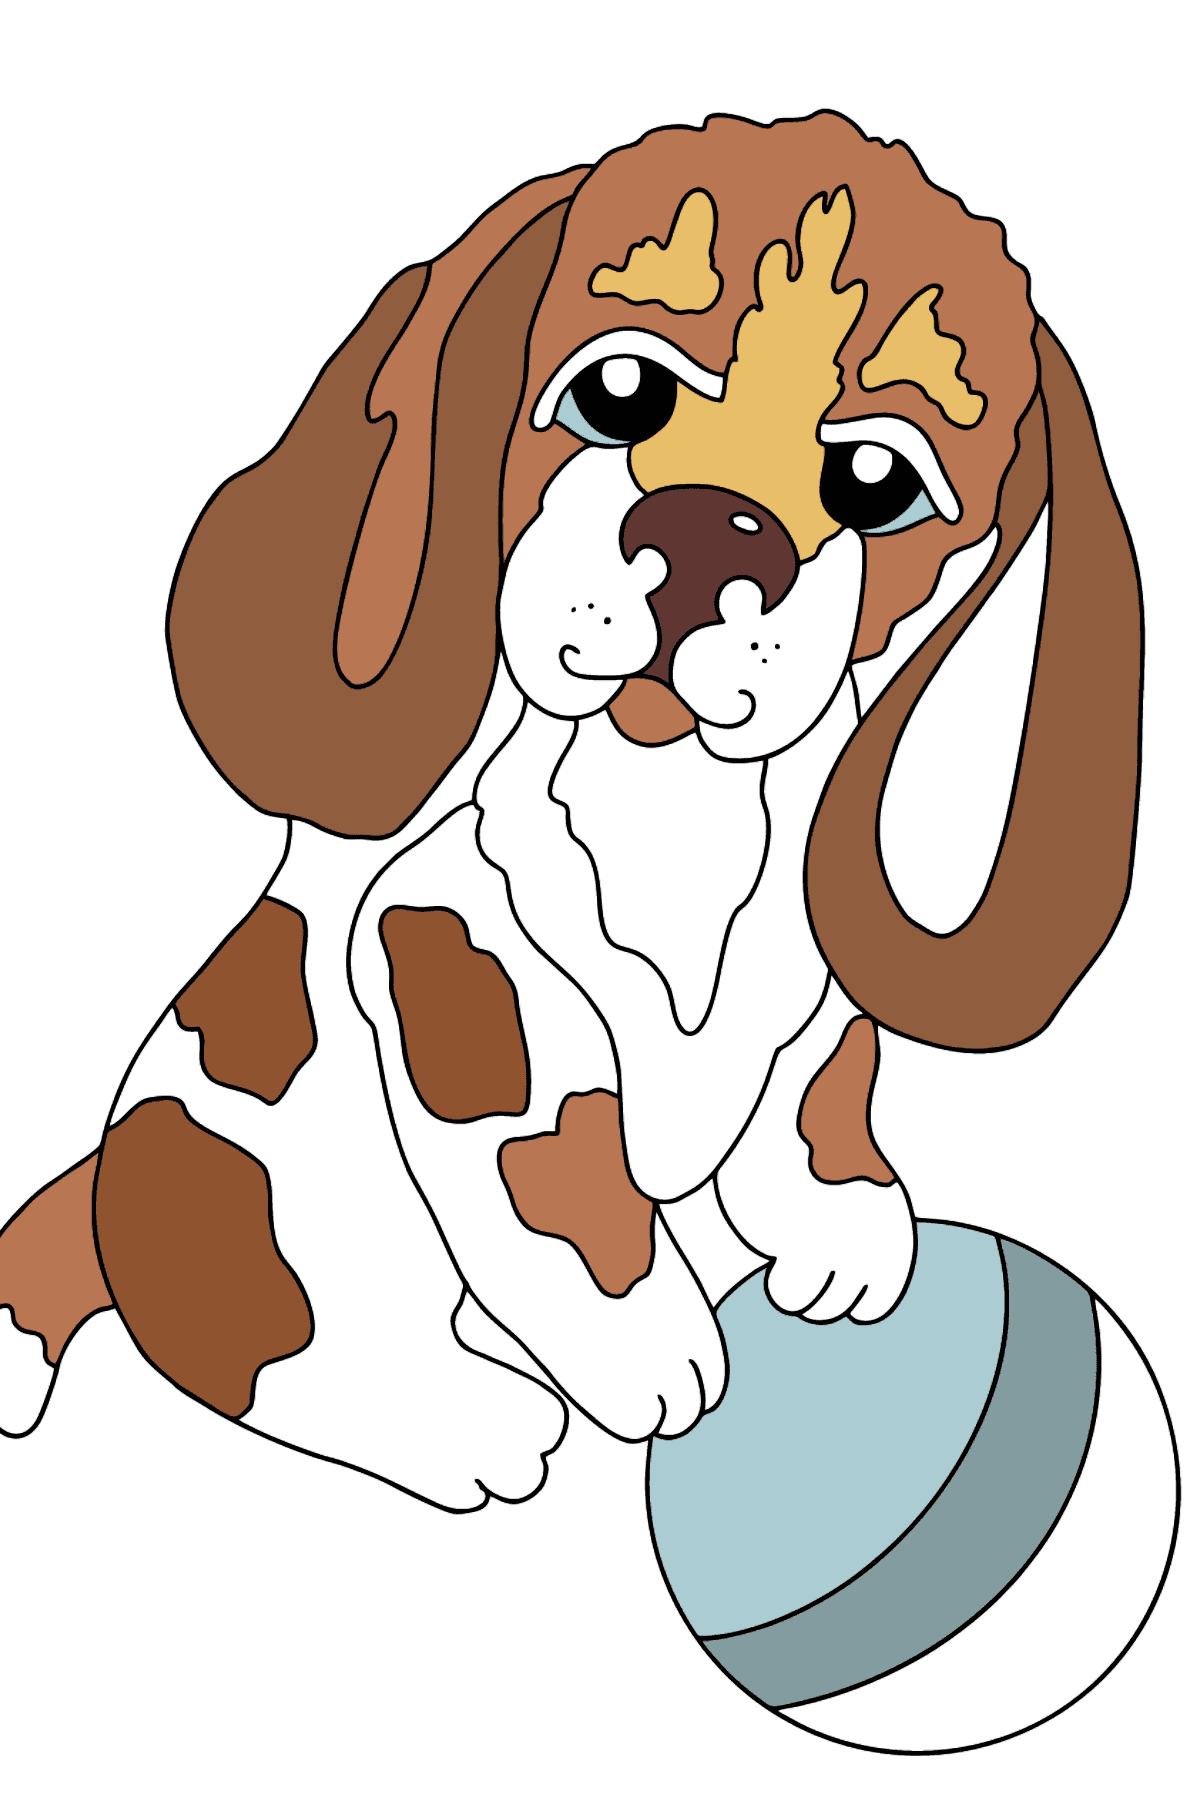 Dibujo para Colorear - Un Perro Jugando con una Pelota Azul - Dibujos para Colorear para Niños